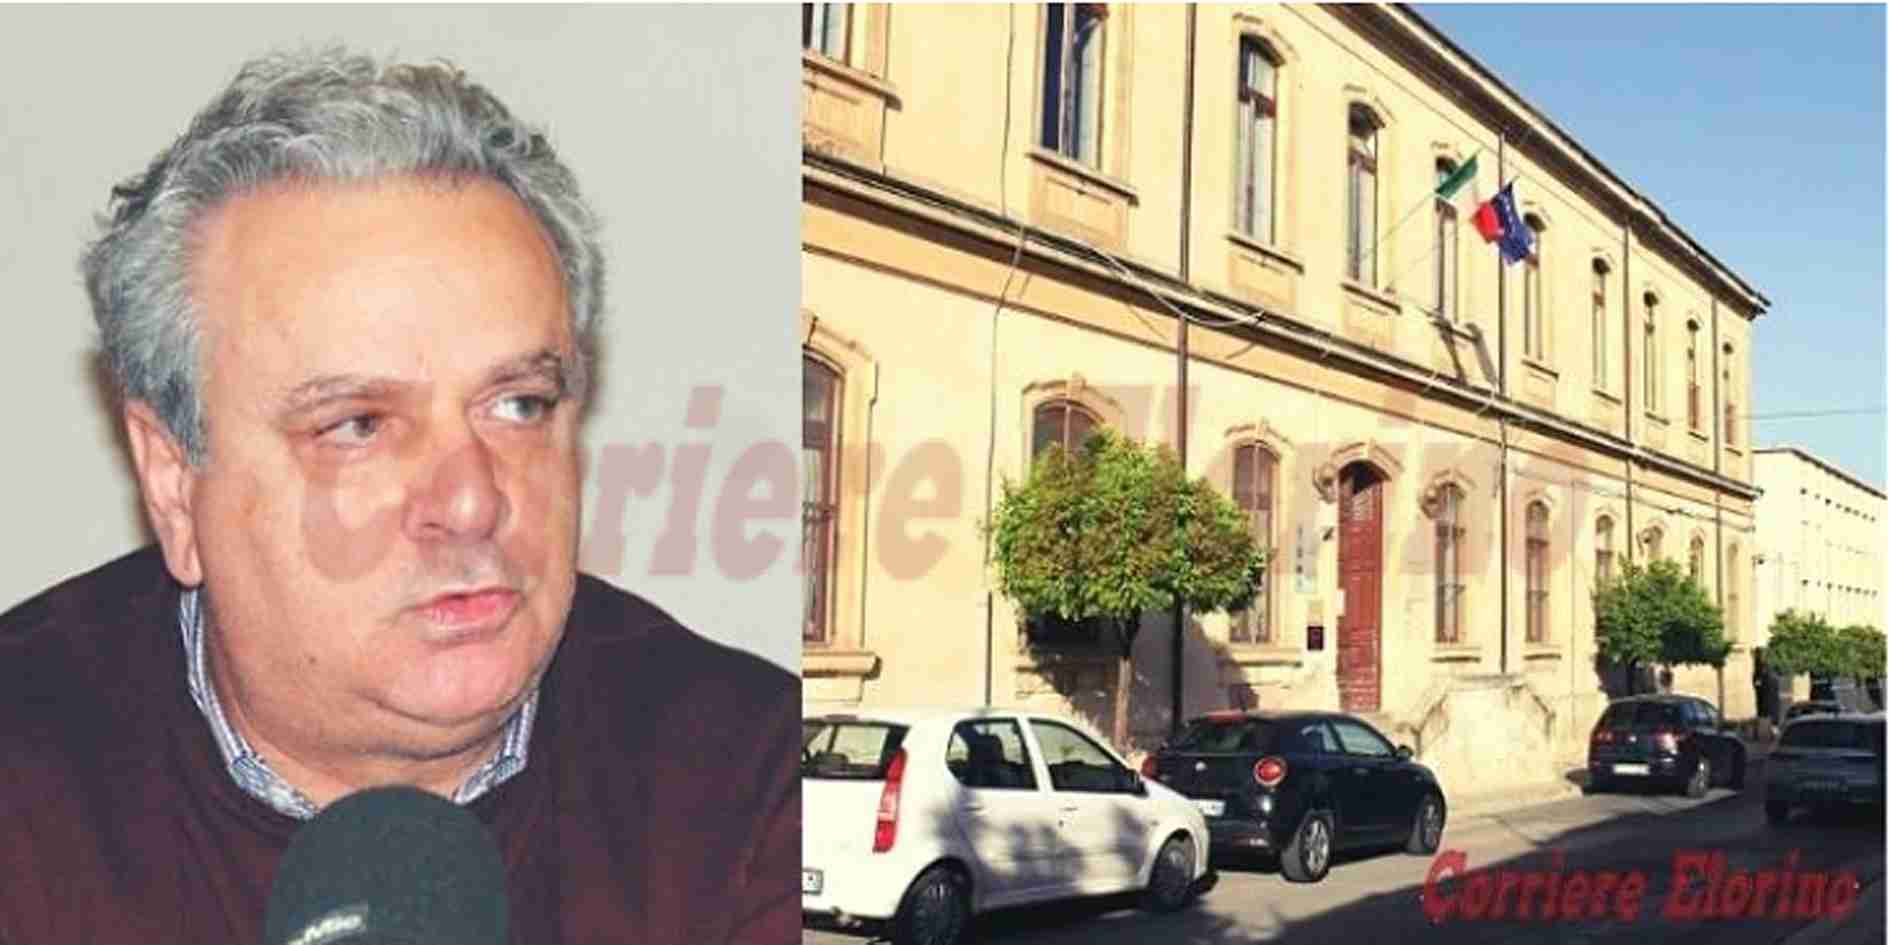 Chiusura plesso “Bellini”, l’ex consigliere Enzo Vigna: “Chiedo al Commissario maggiore attenzione del territorio”